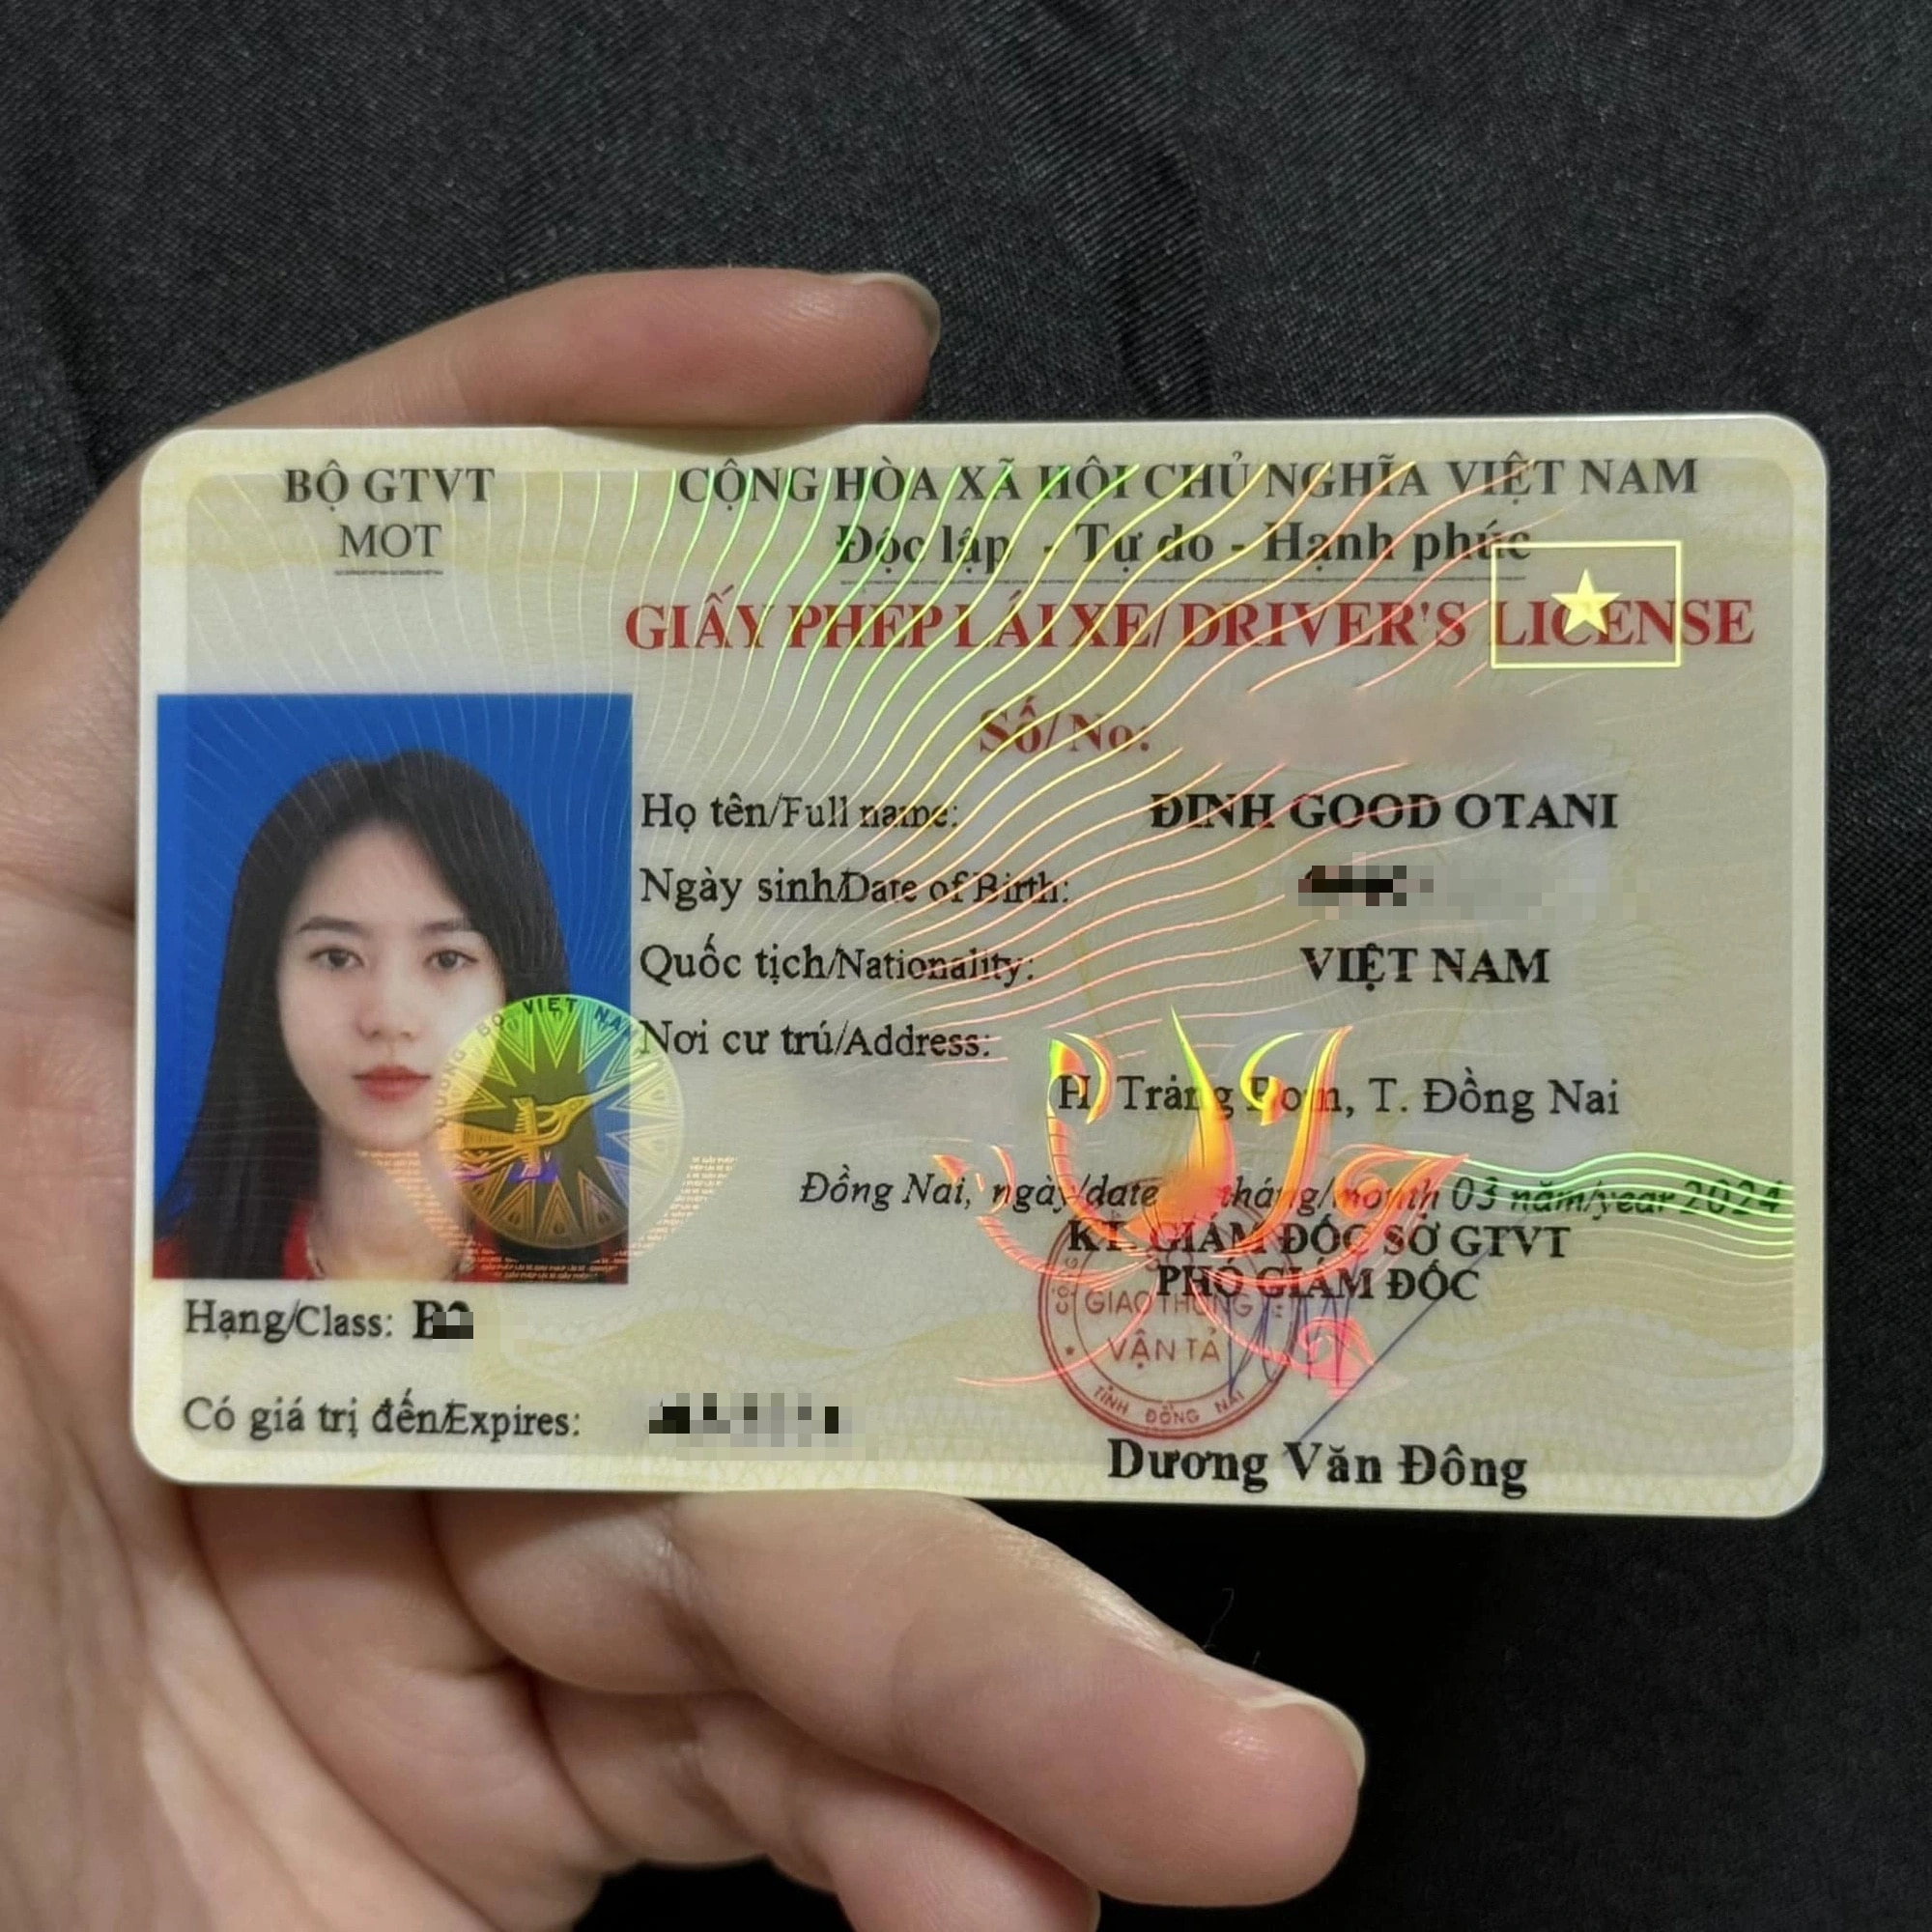 Vì cái tên quá lạ nên đi đến đâu Đinh Good Otani cũng trở nên đặc biệt, nhiều người còn nghĩ cô là con lai, người nước ngoài - Ảnh: NVCC